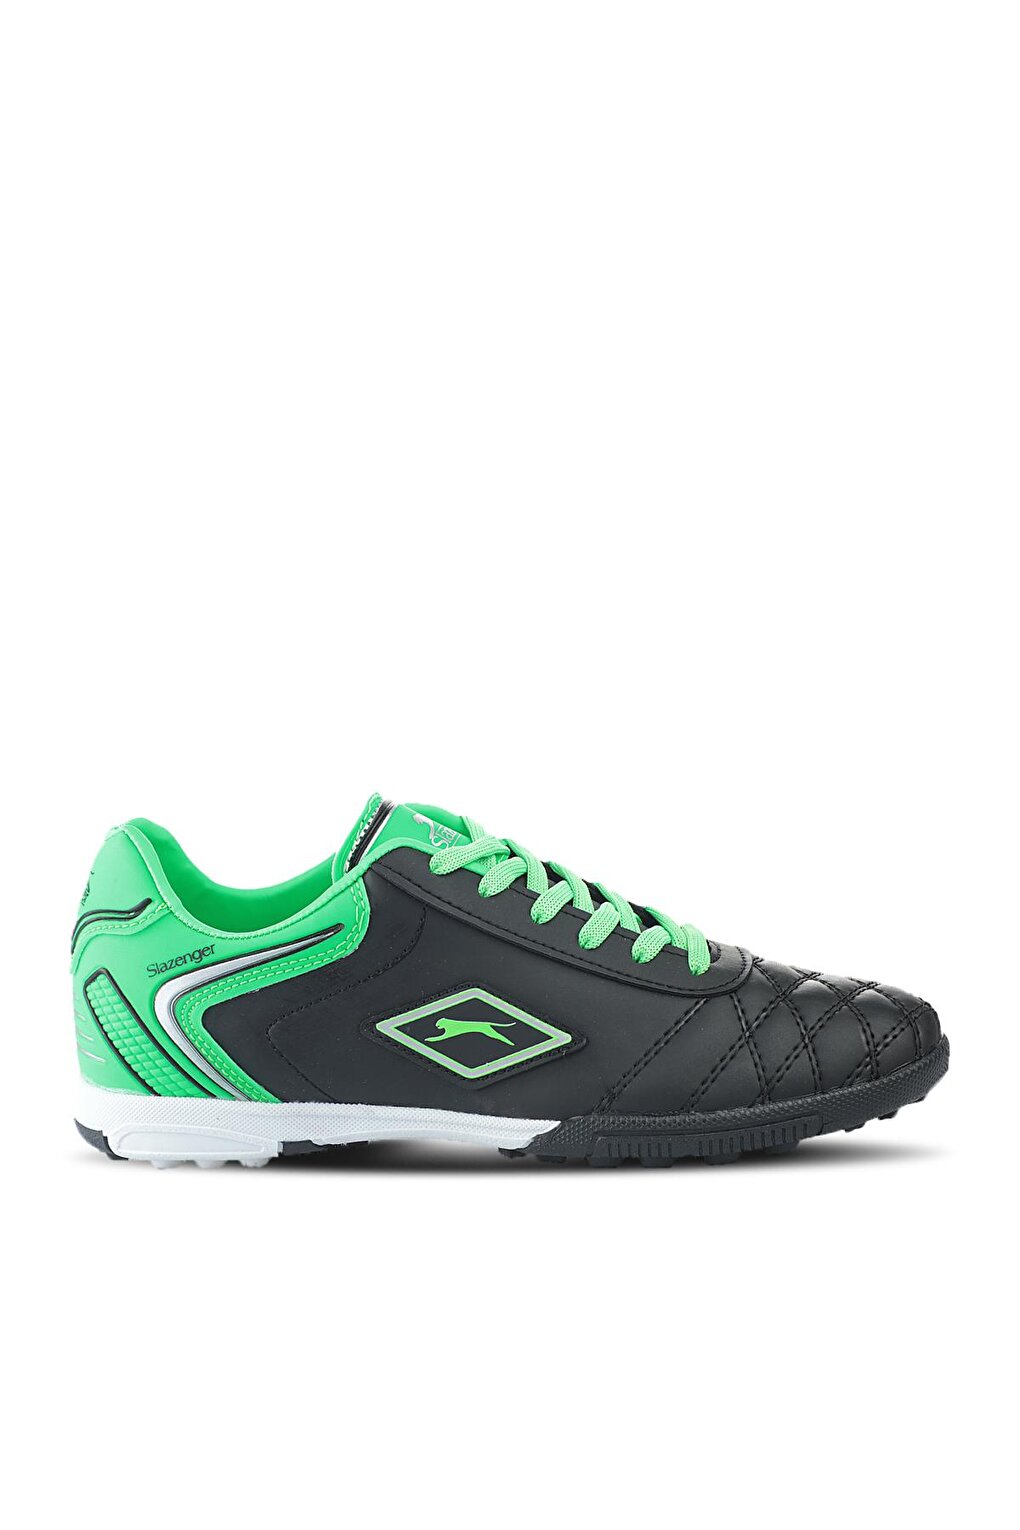 Футбольные кроссовки для мальчиков HUGO HS Astroturf, черные/зеленые SLAZENGER сибртех 61477 черно зеленый